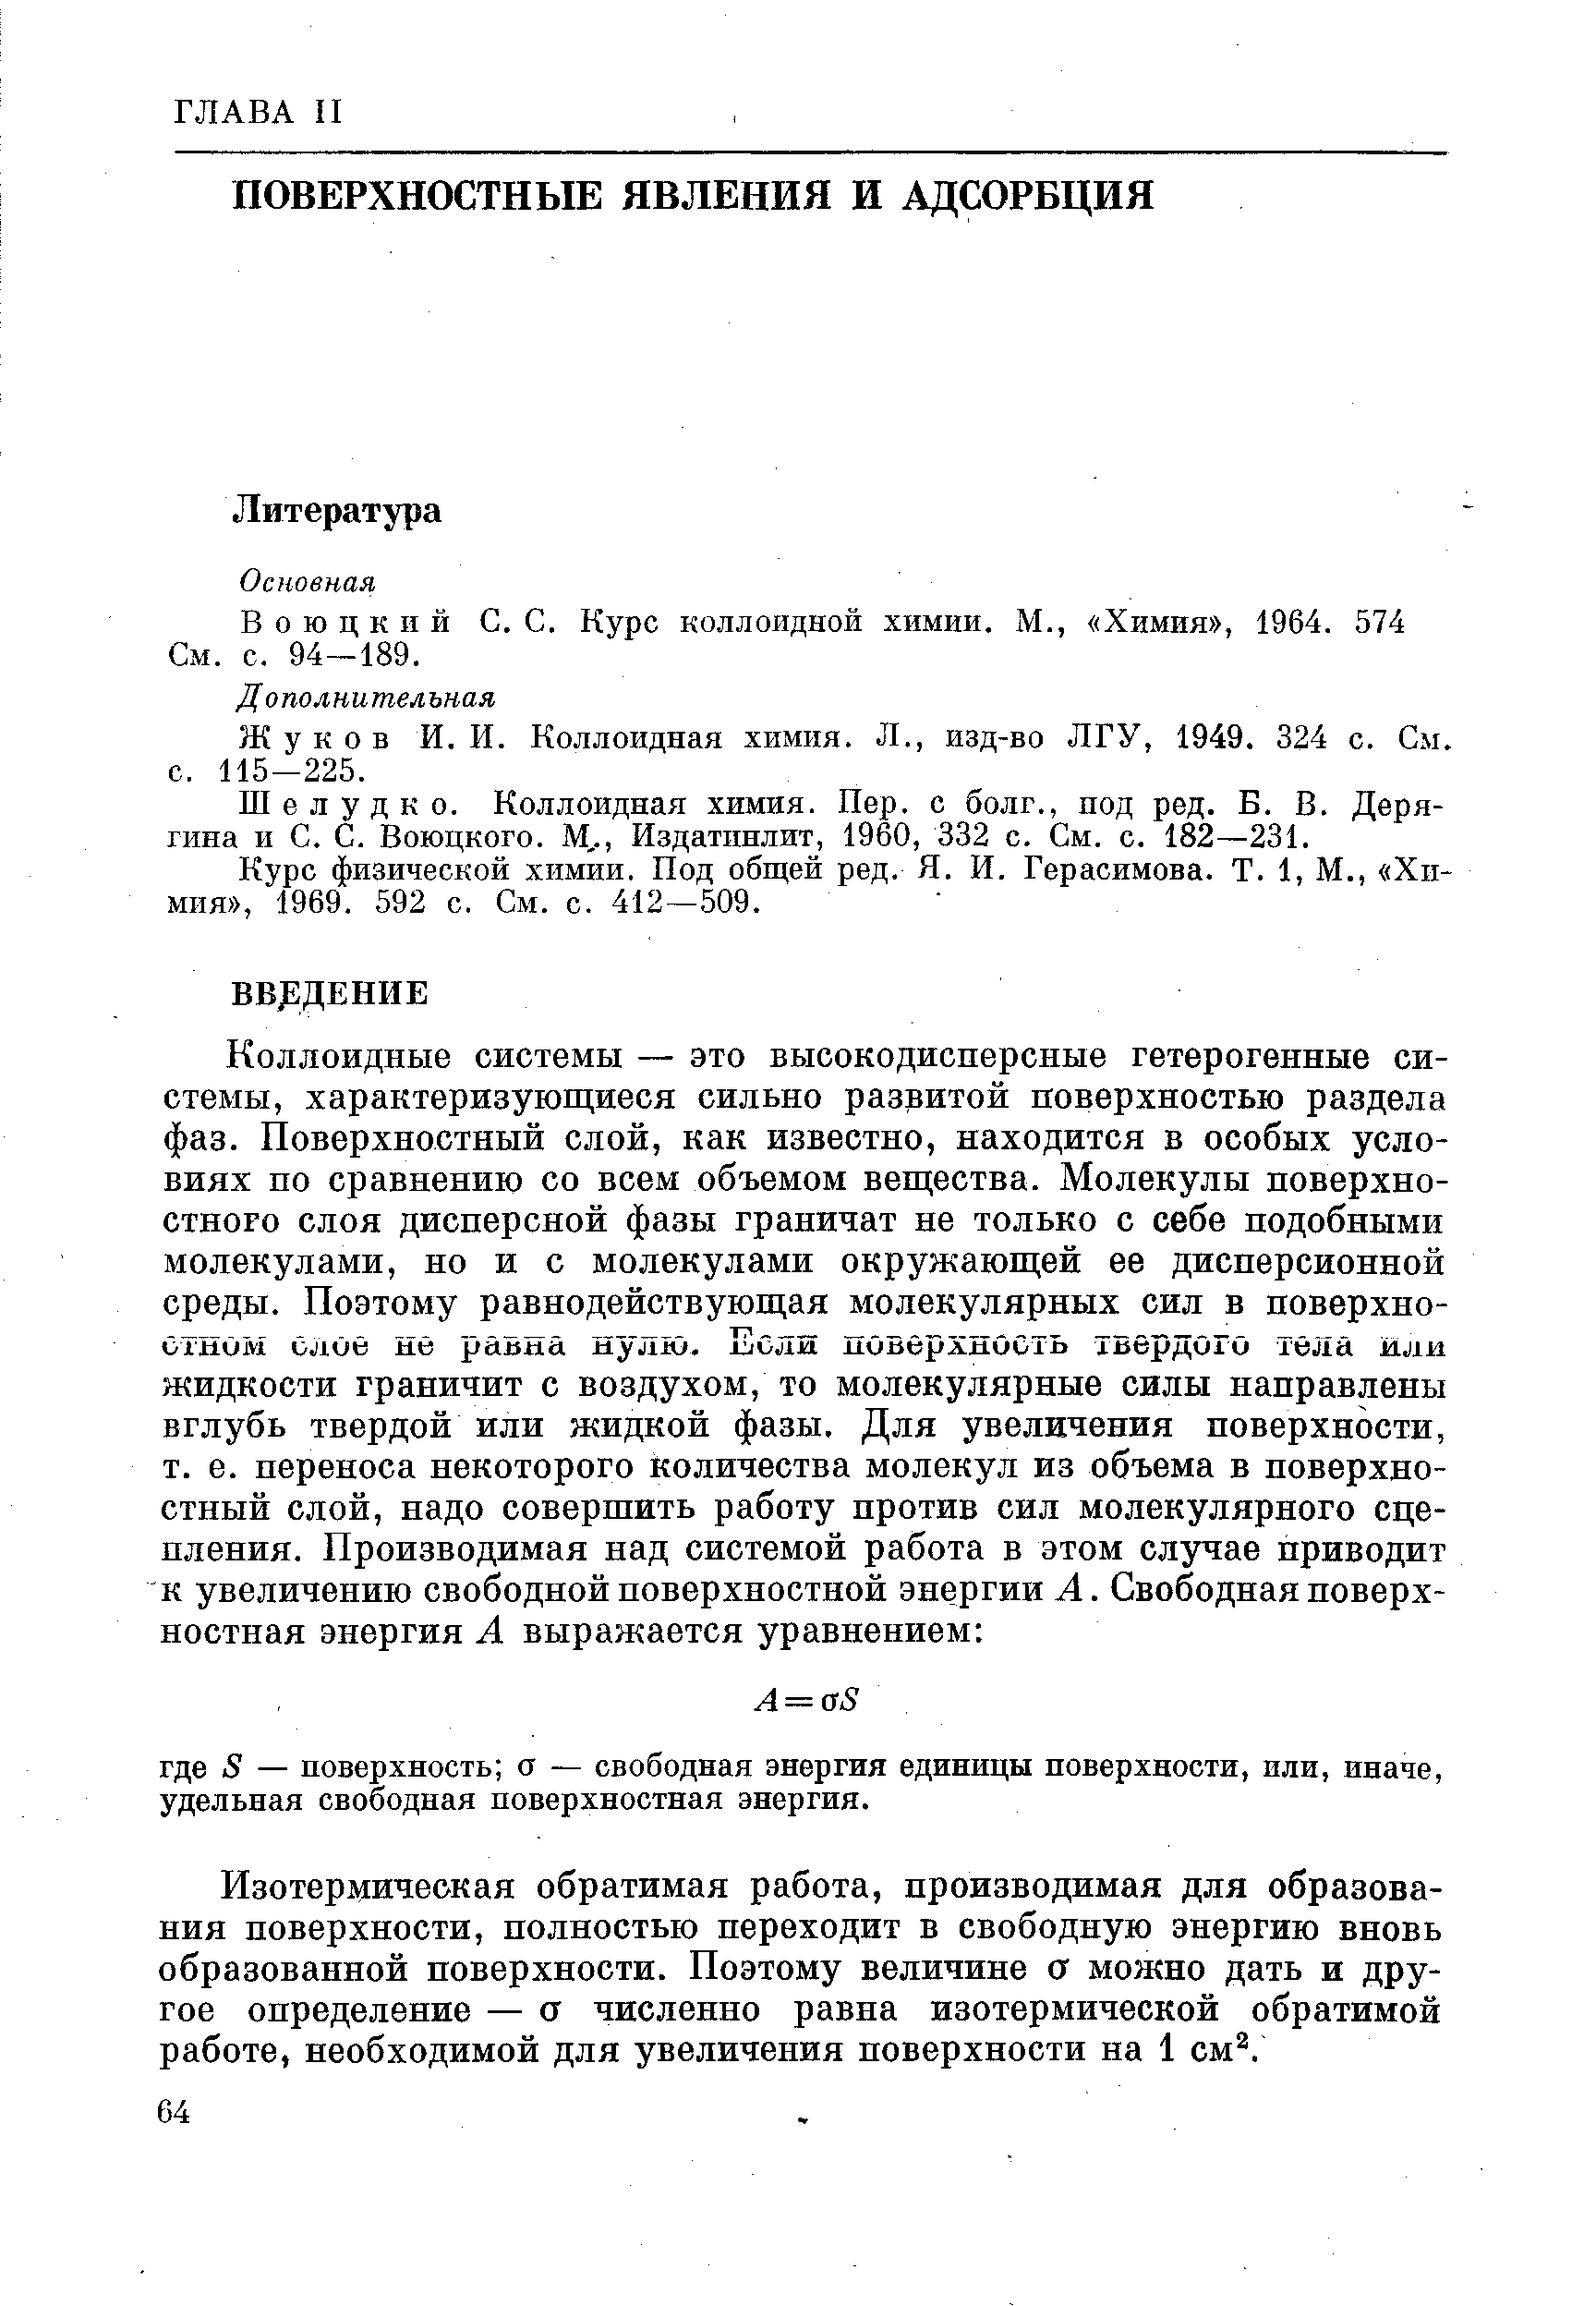 Воюцкий С. С. Курс коллоидной химии. М., Химия , 1964. 574 См. с. 94-189.